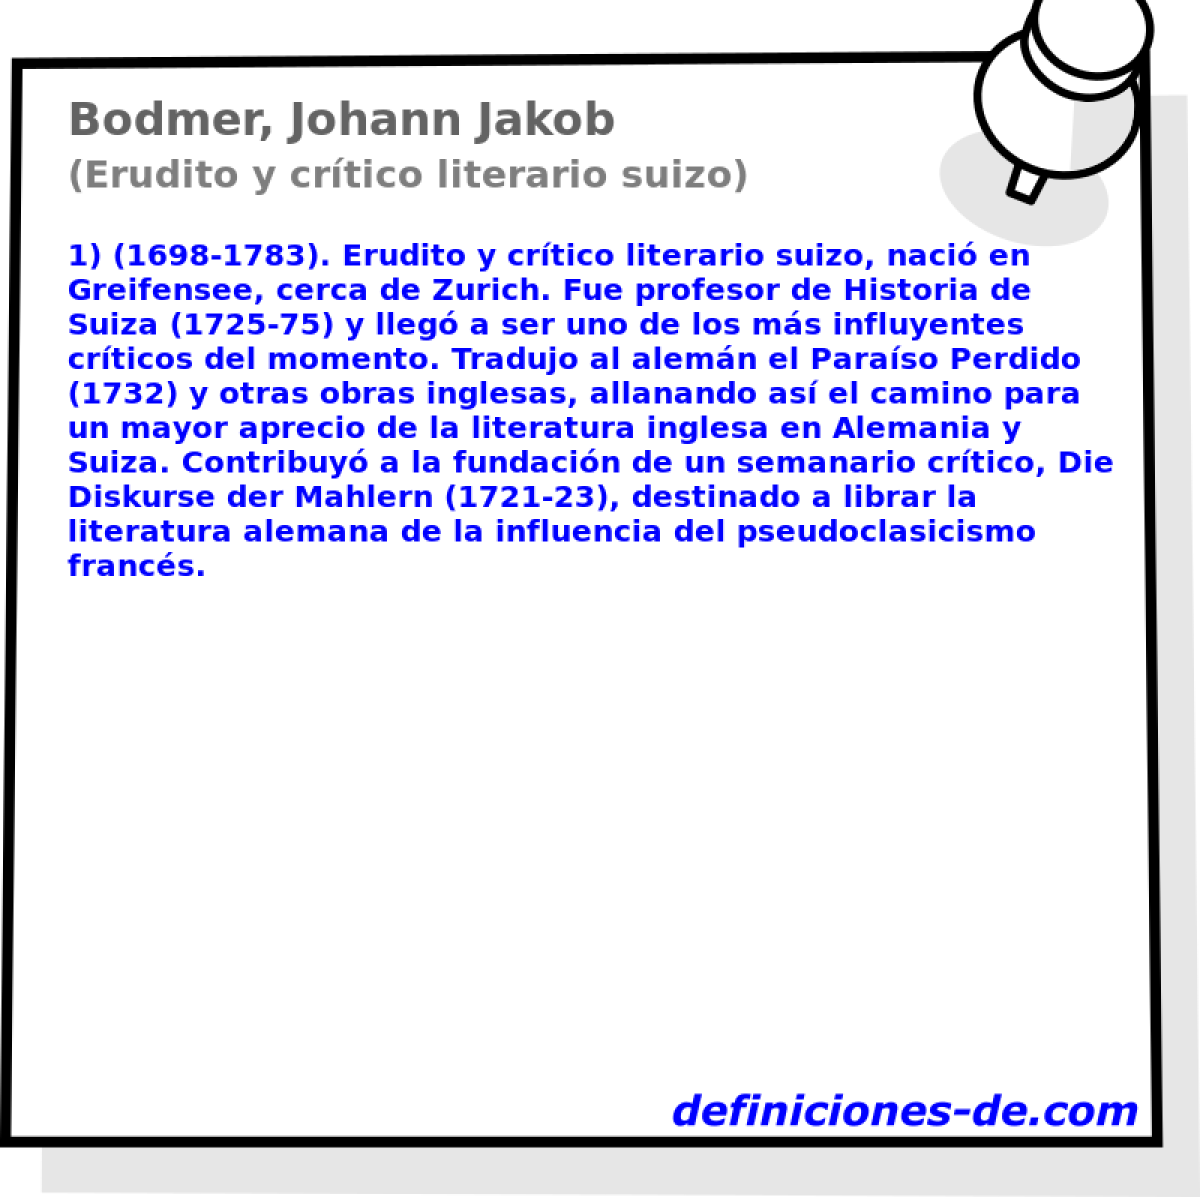 Bodmer, Johann Jakob (Erudito y crtico literario suizo)